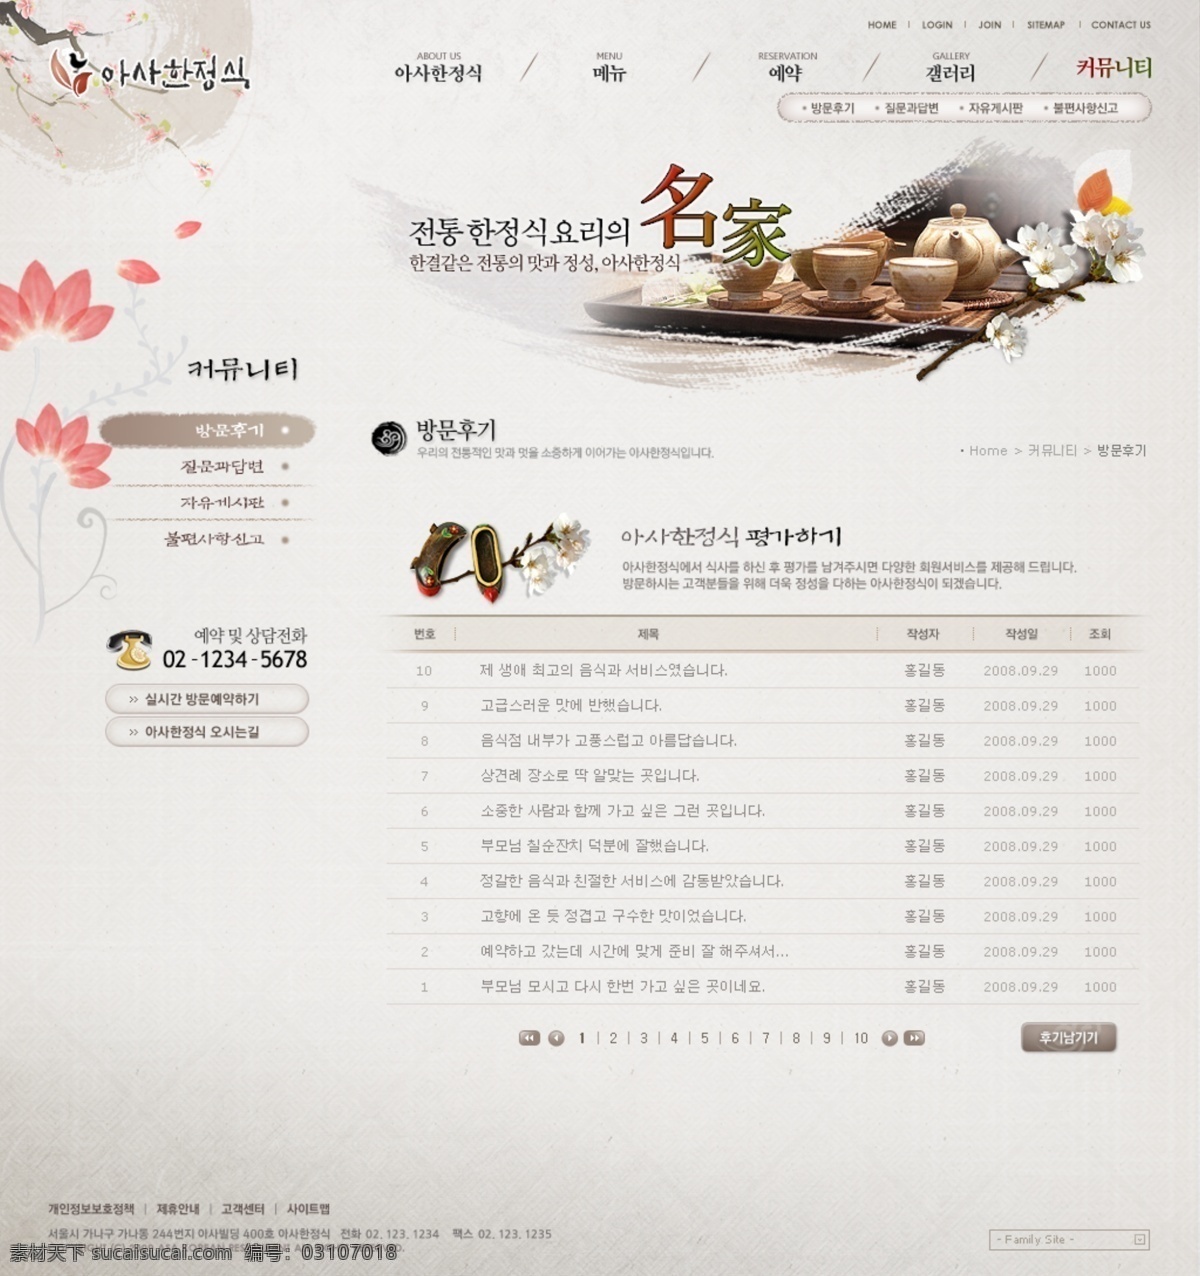 韩国 料理 美食 茶壶psd 韩国料理美食 茶文化 网页 模版 网页素材 网页模板